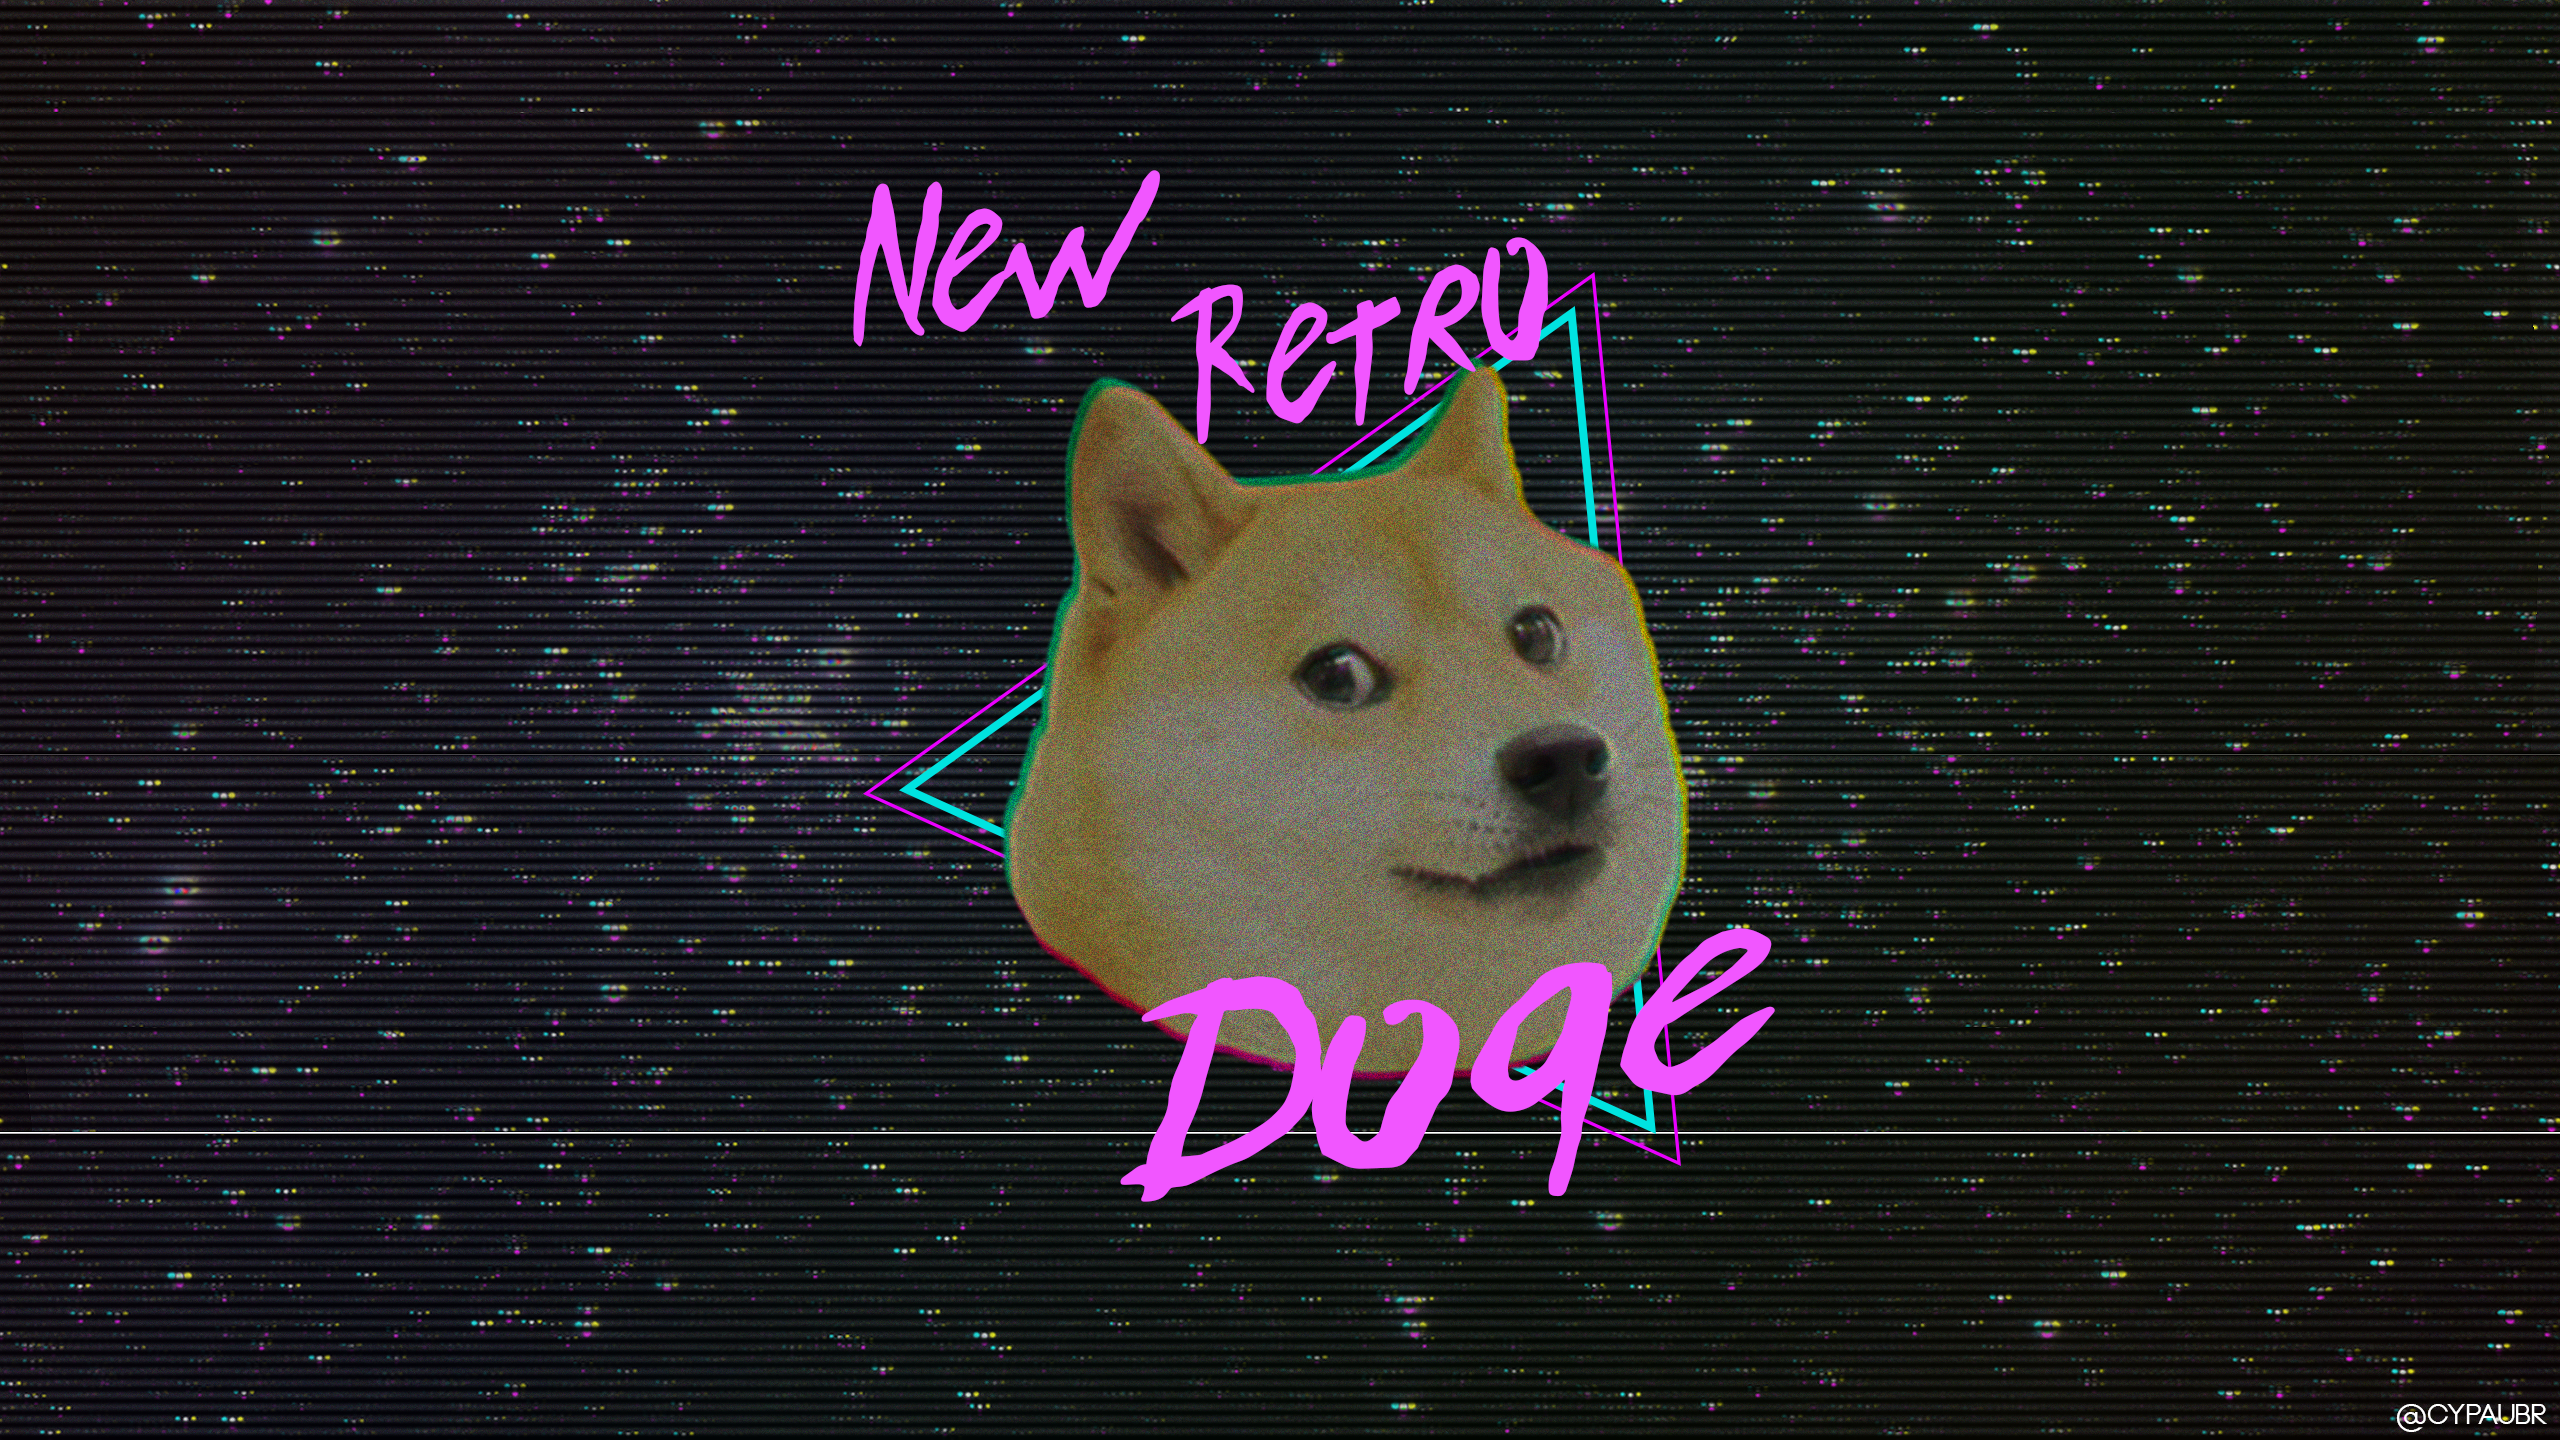 retro wave doge meme dog wallpaper resolution 2560x1440 id 511851 wallha com retro wave doge meme dog wallpaper